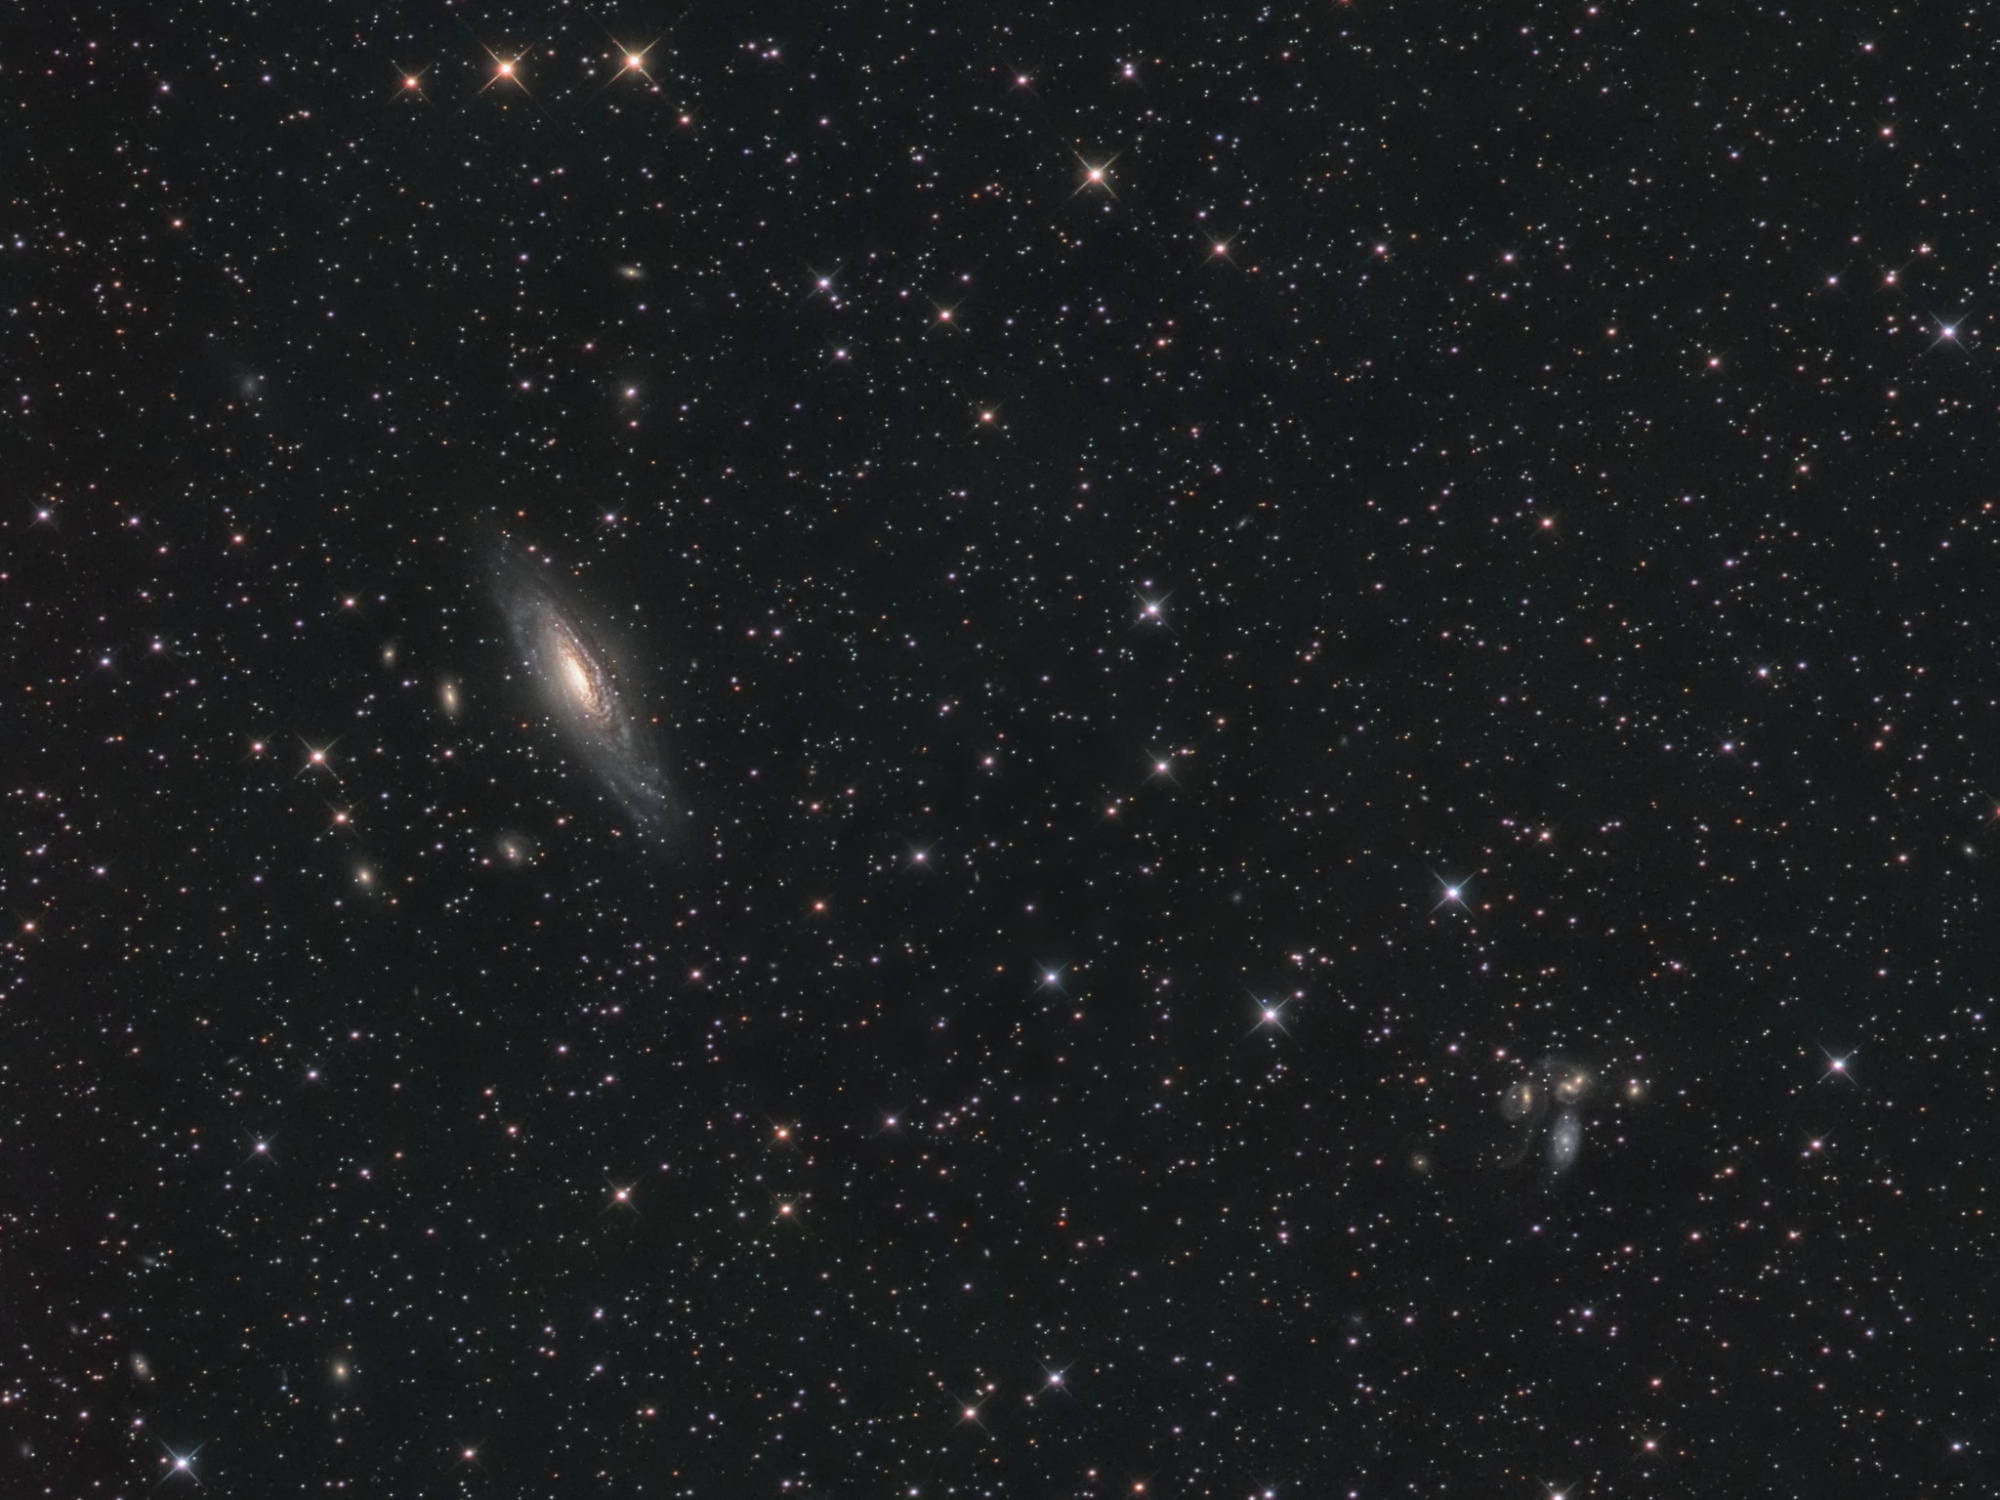 galaxies_pegase_finale_s_crop.thumb.jpg.8203799e153bcdec2964f5dac4e10f85.jpg